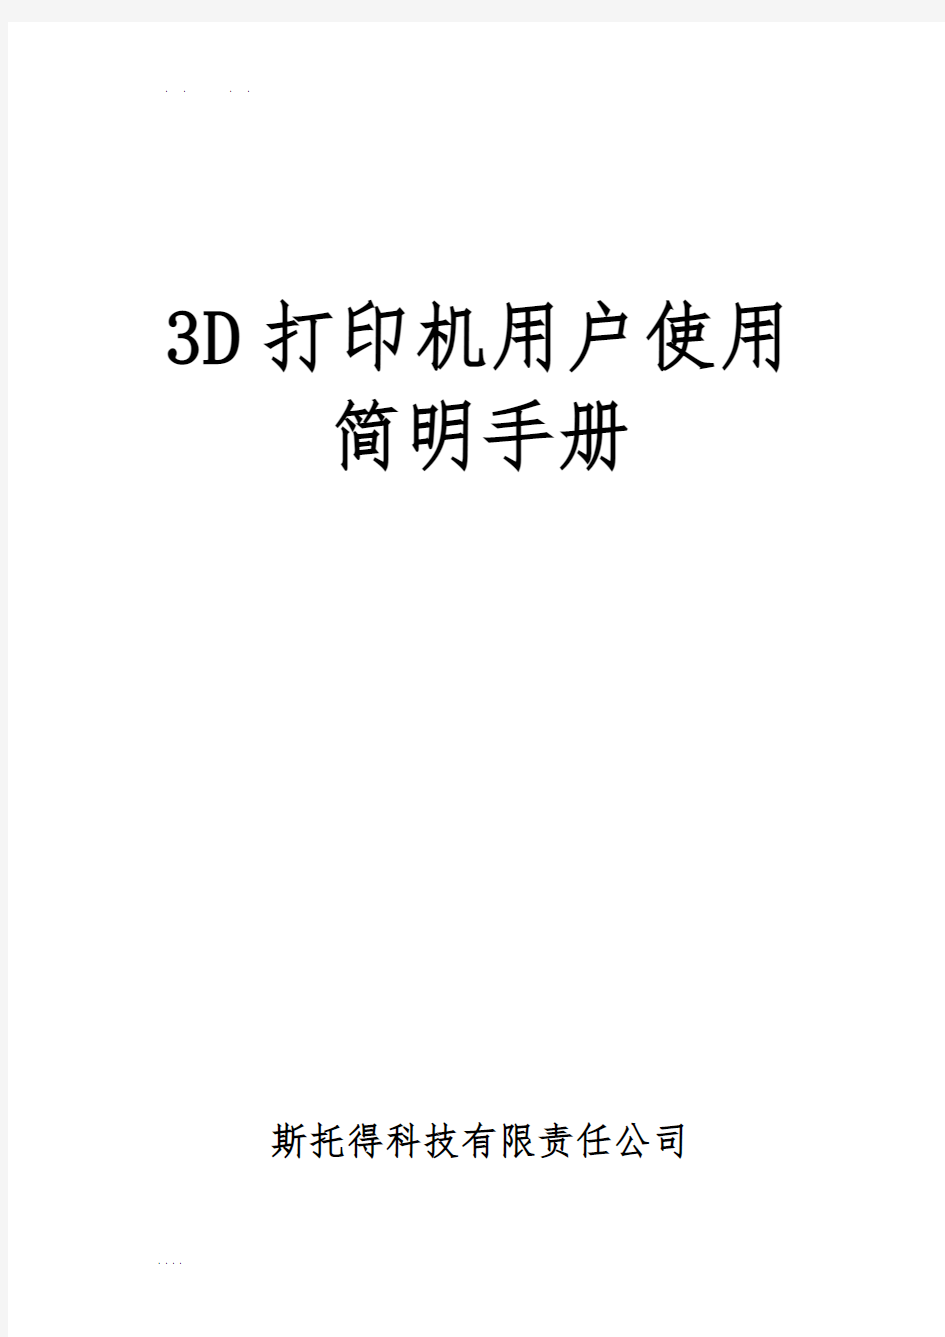 3D打印机用户使用简明手册范本